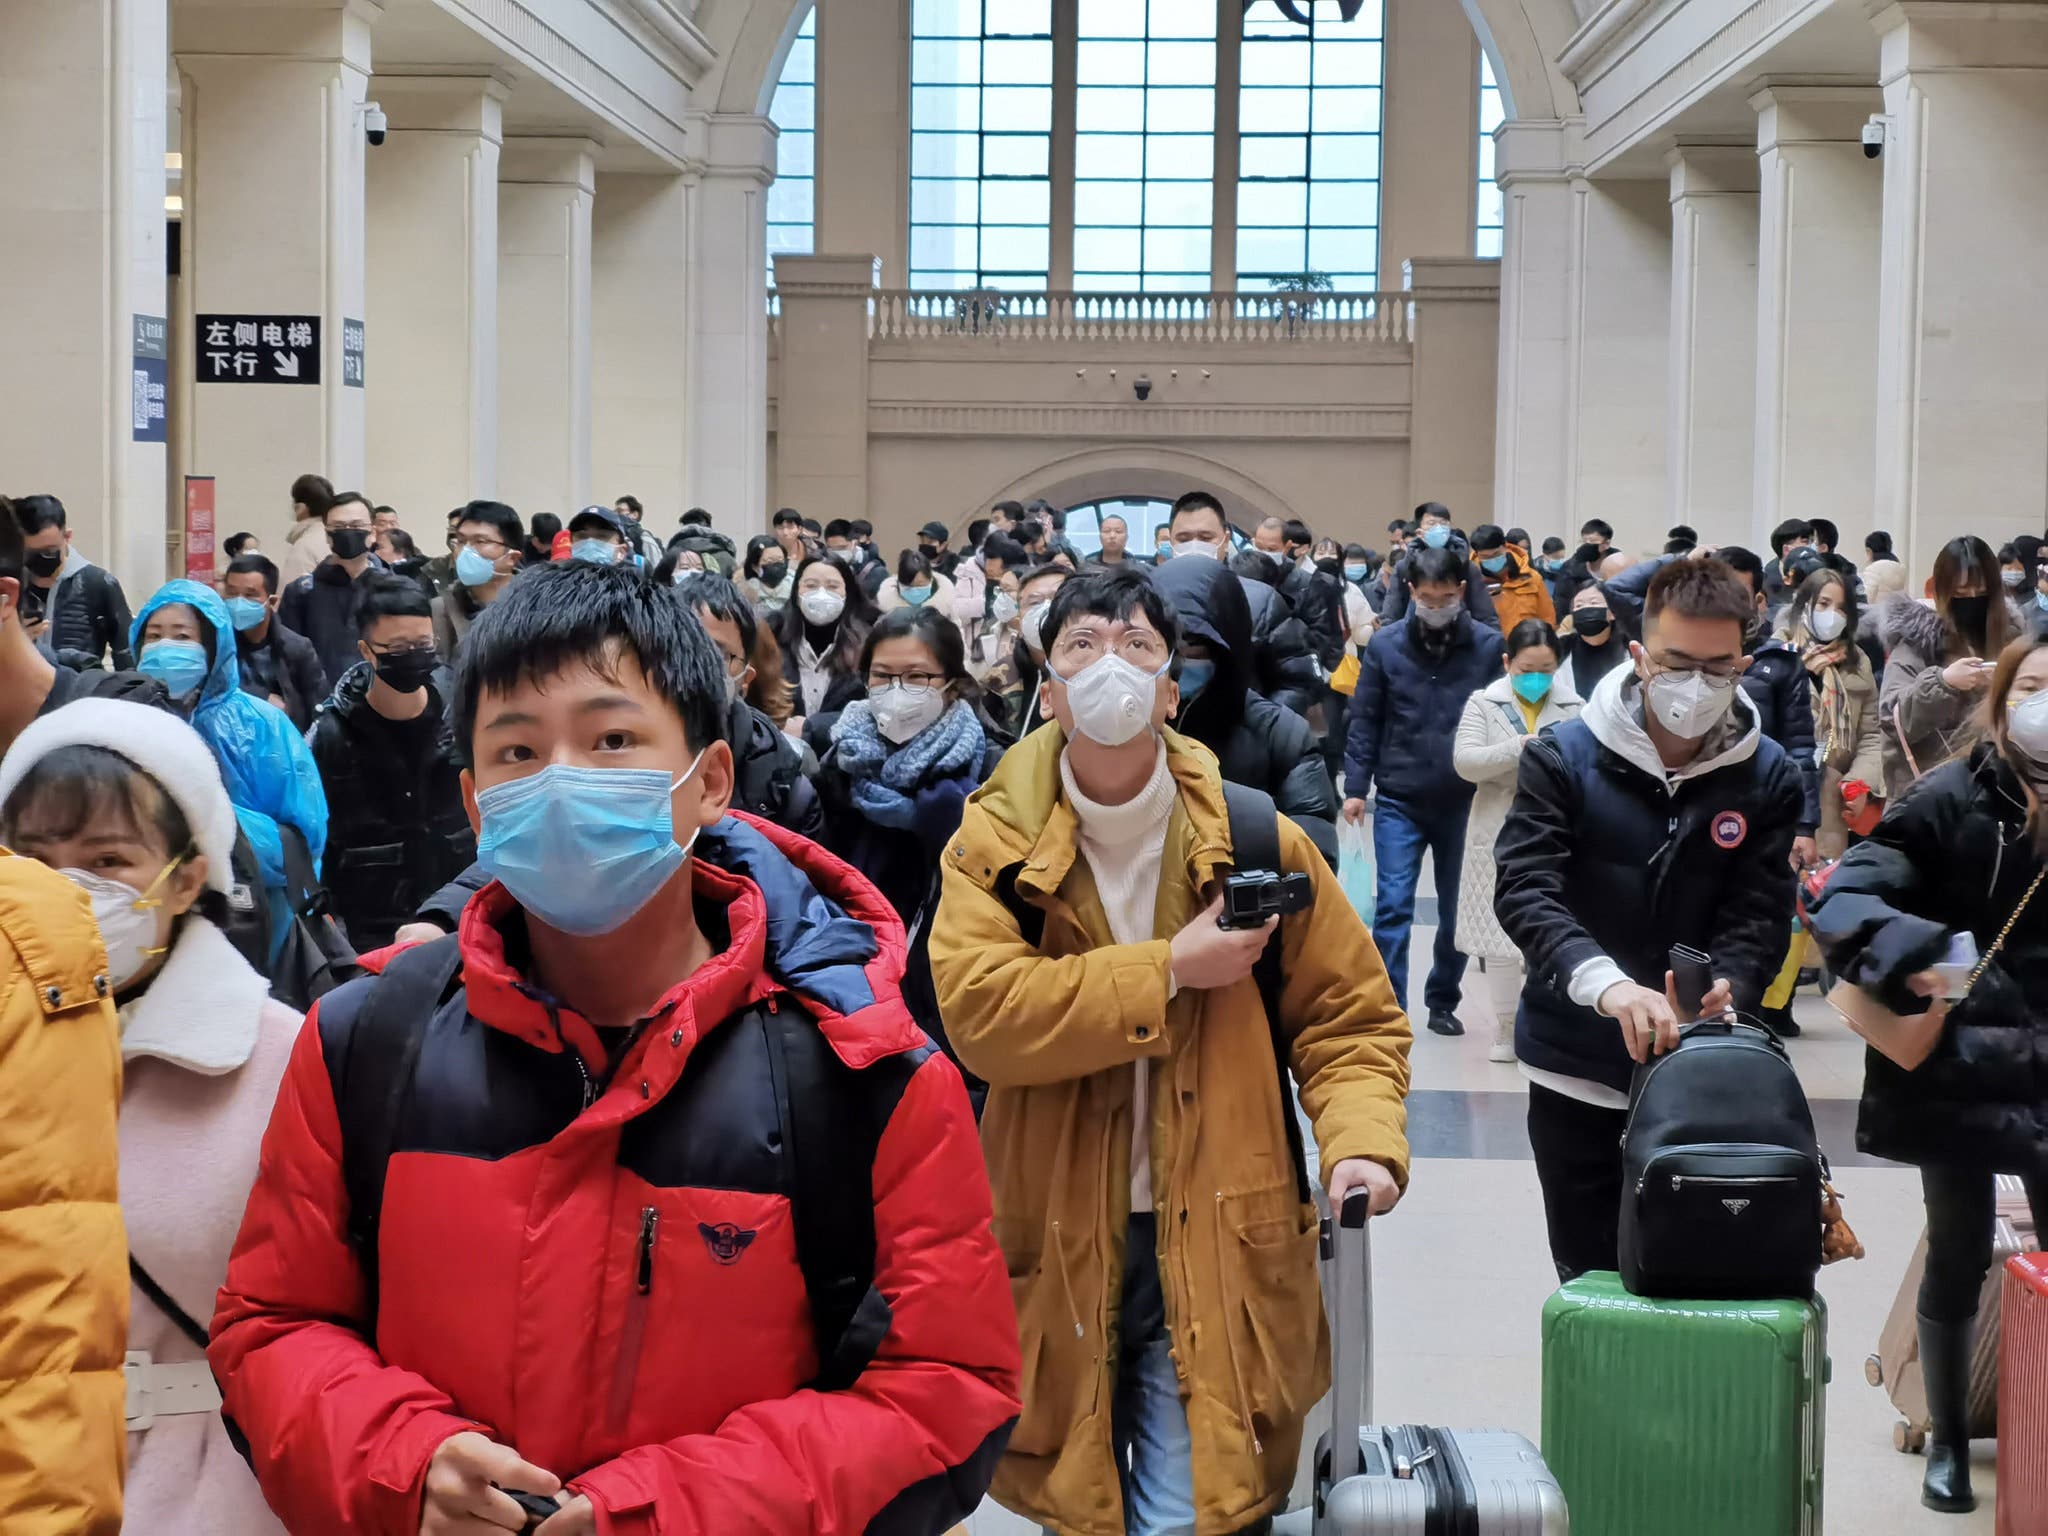 مدينة ووهان الصينية تحت حصار الفيروس